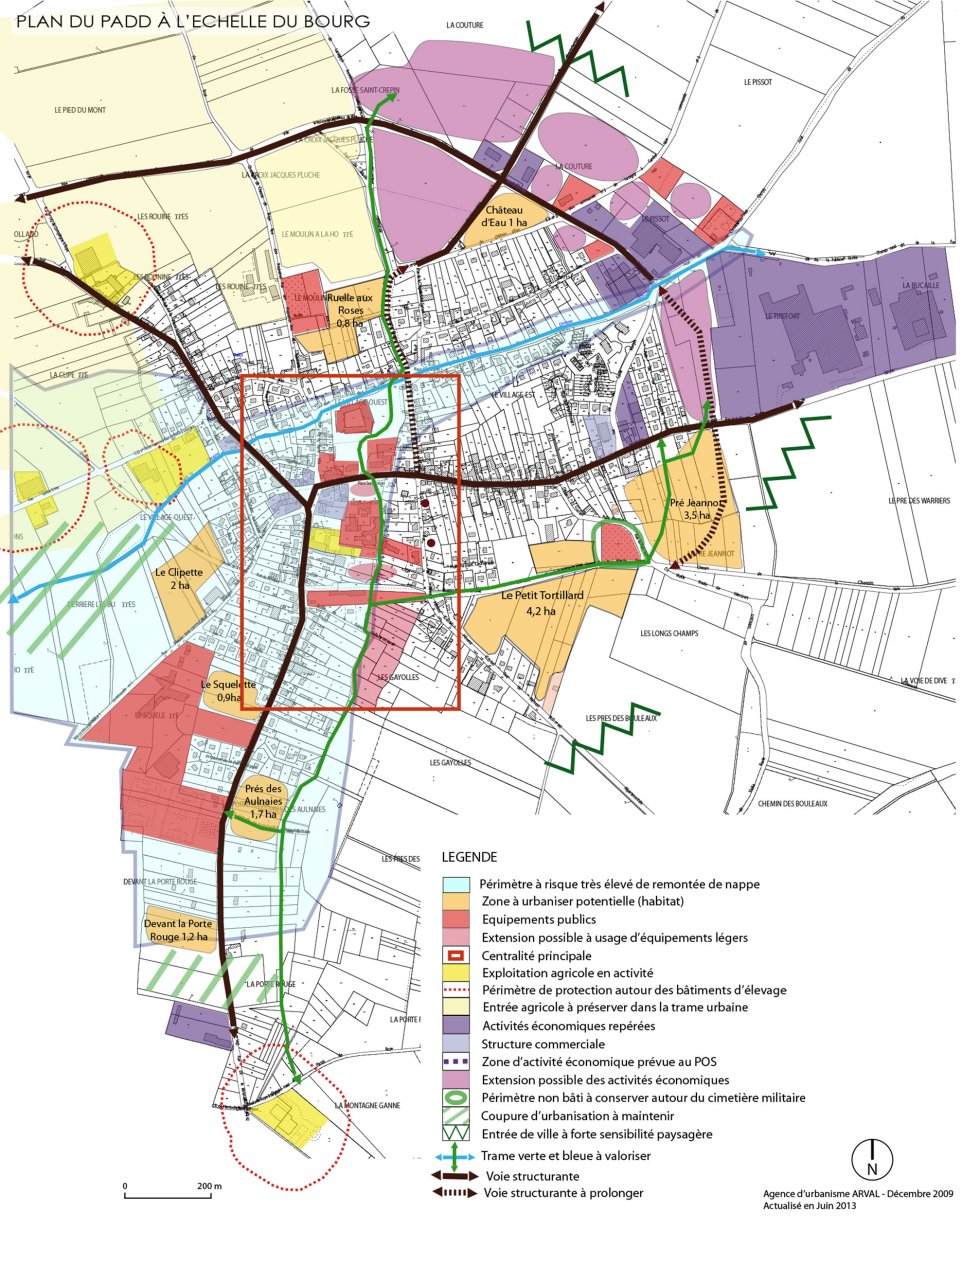 ARVAL architecture - PLAN LOCAL D’URBANISME (PLU) – LASSIGNY (60) - 2 PLU Lassigny carte du PADD à l'échelle du village